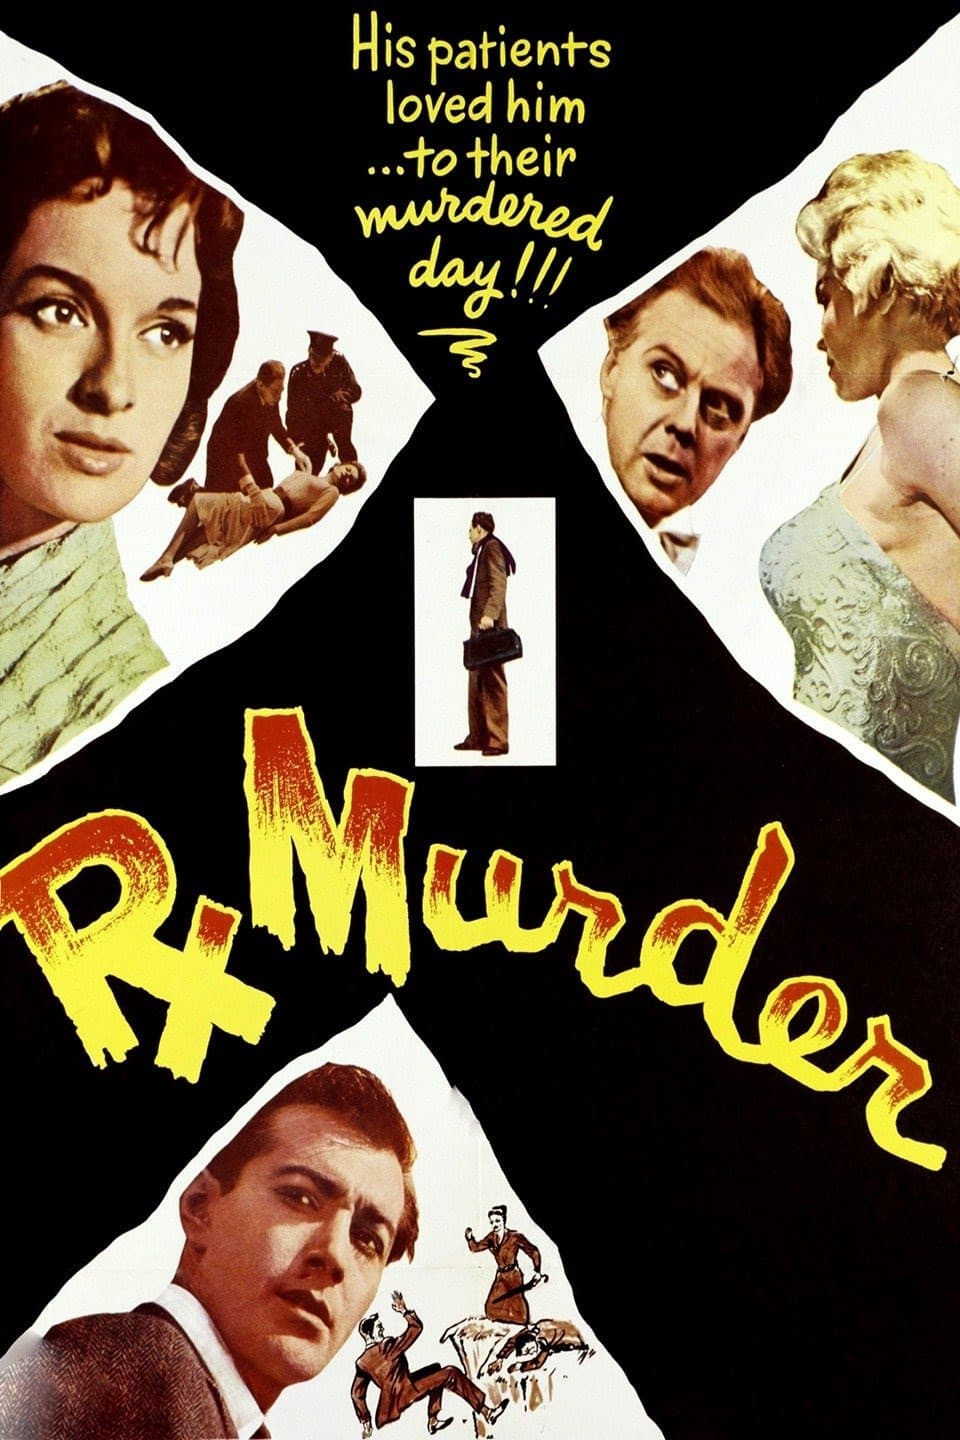 Rx Murder (1958)